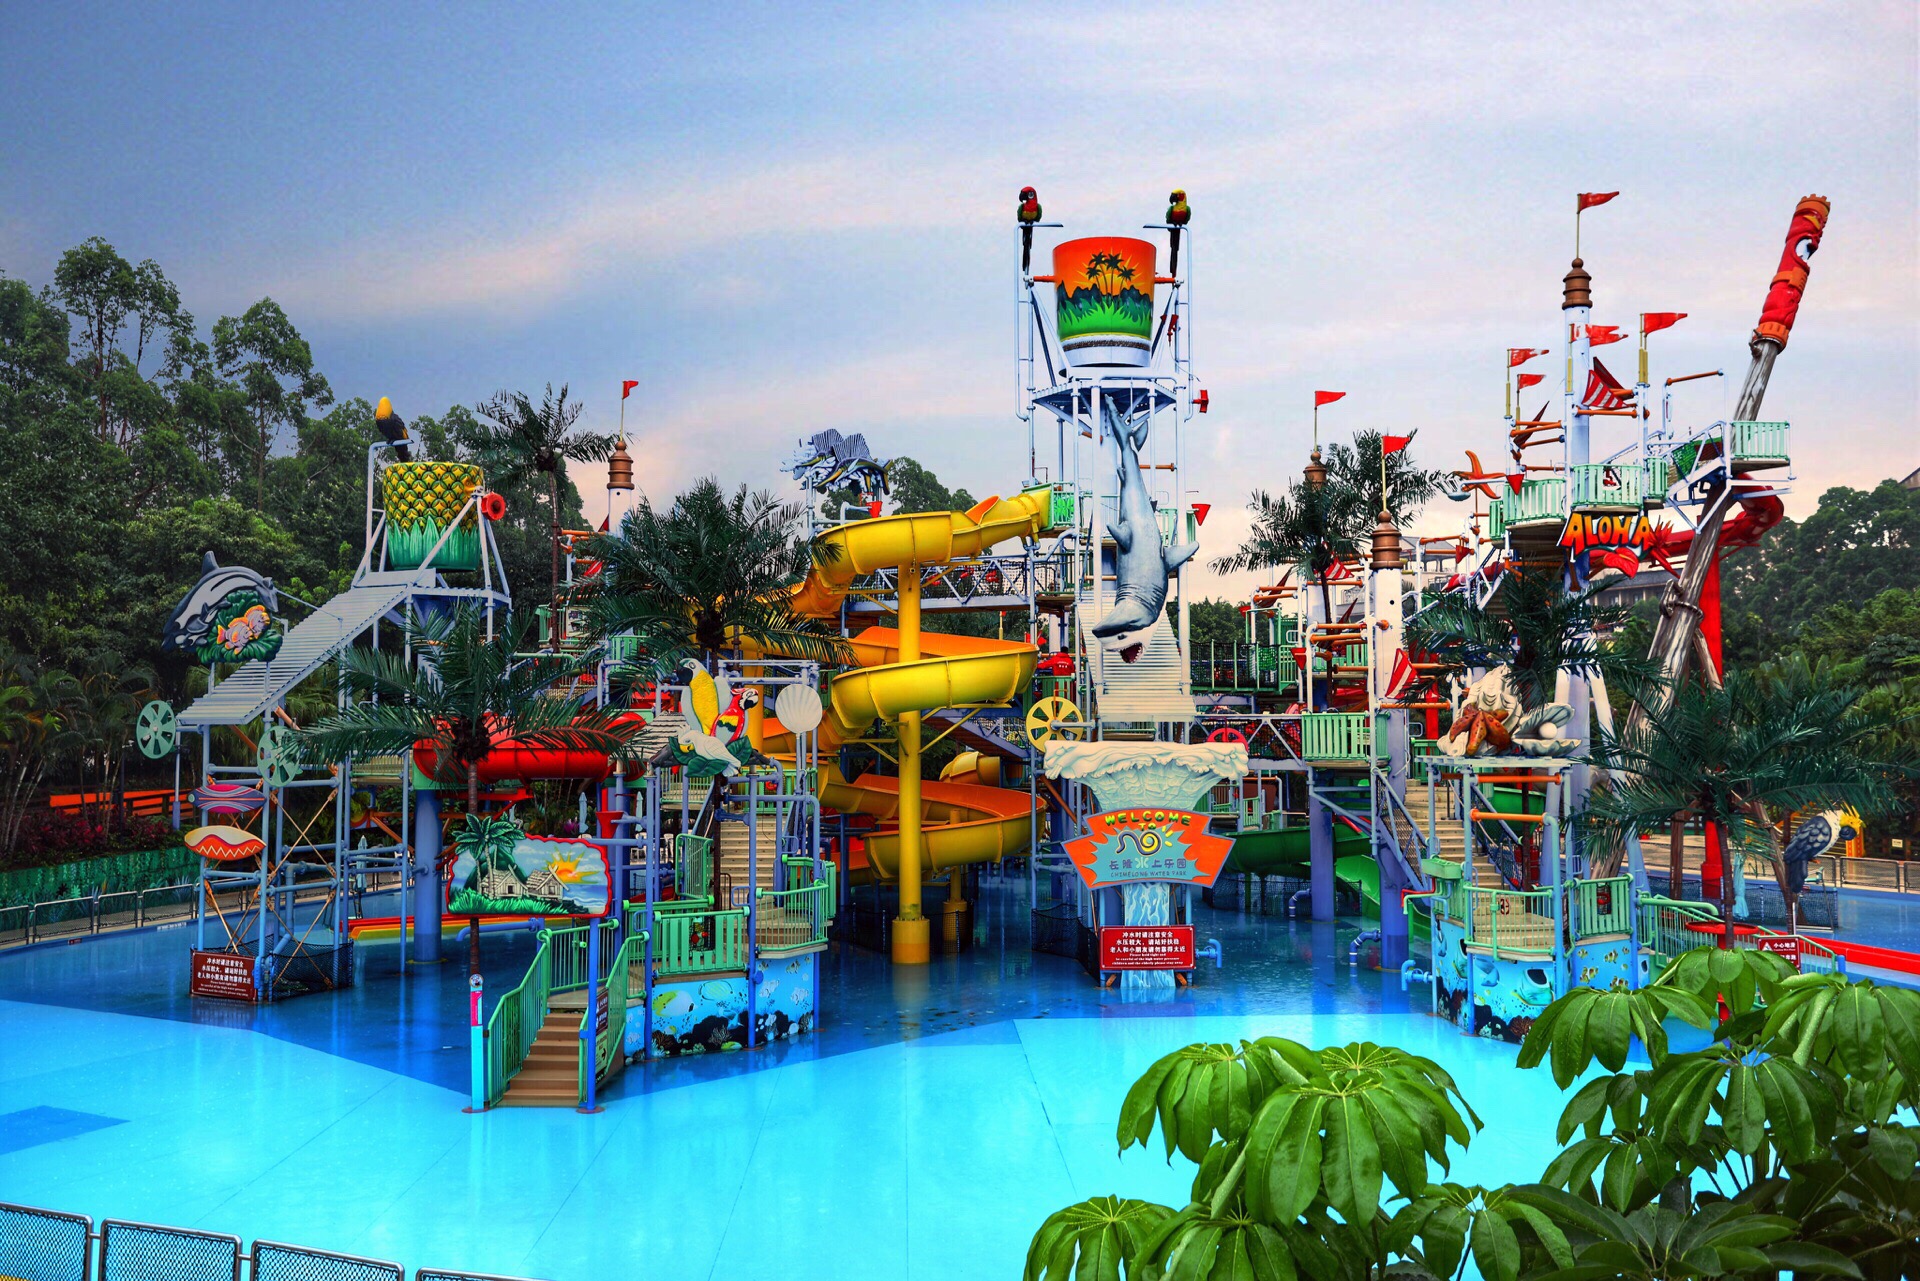 广州最刺激好玩的水上乐园攻略:8大超级项目,少一个就